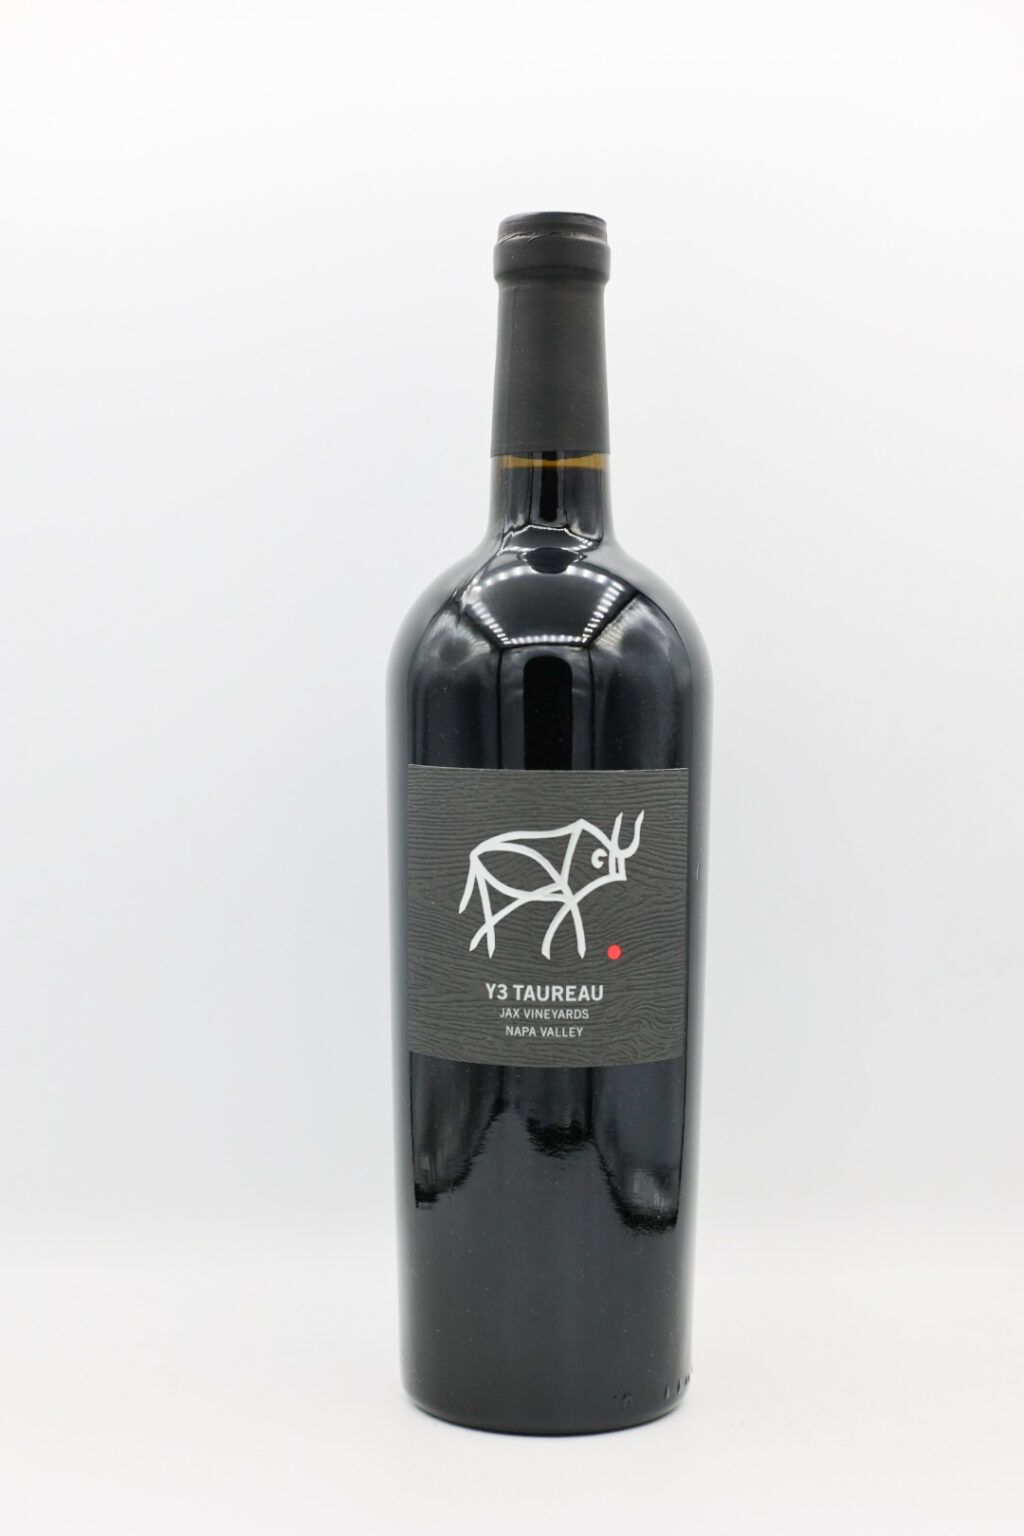 Jax Vineyards Y3 Taureau Red Blend 2020